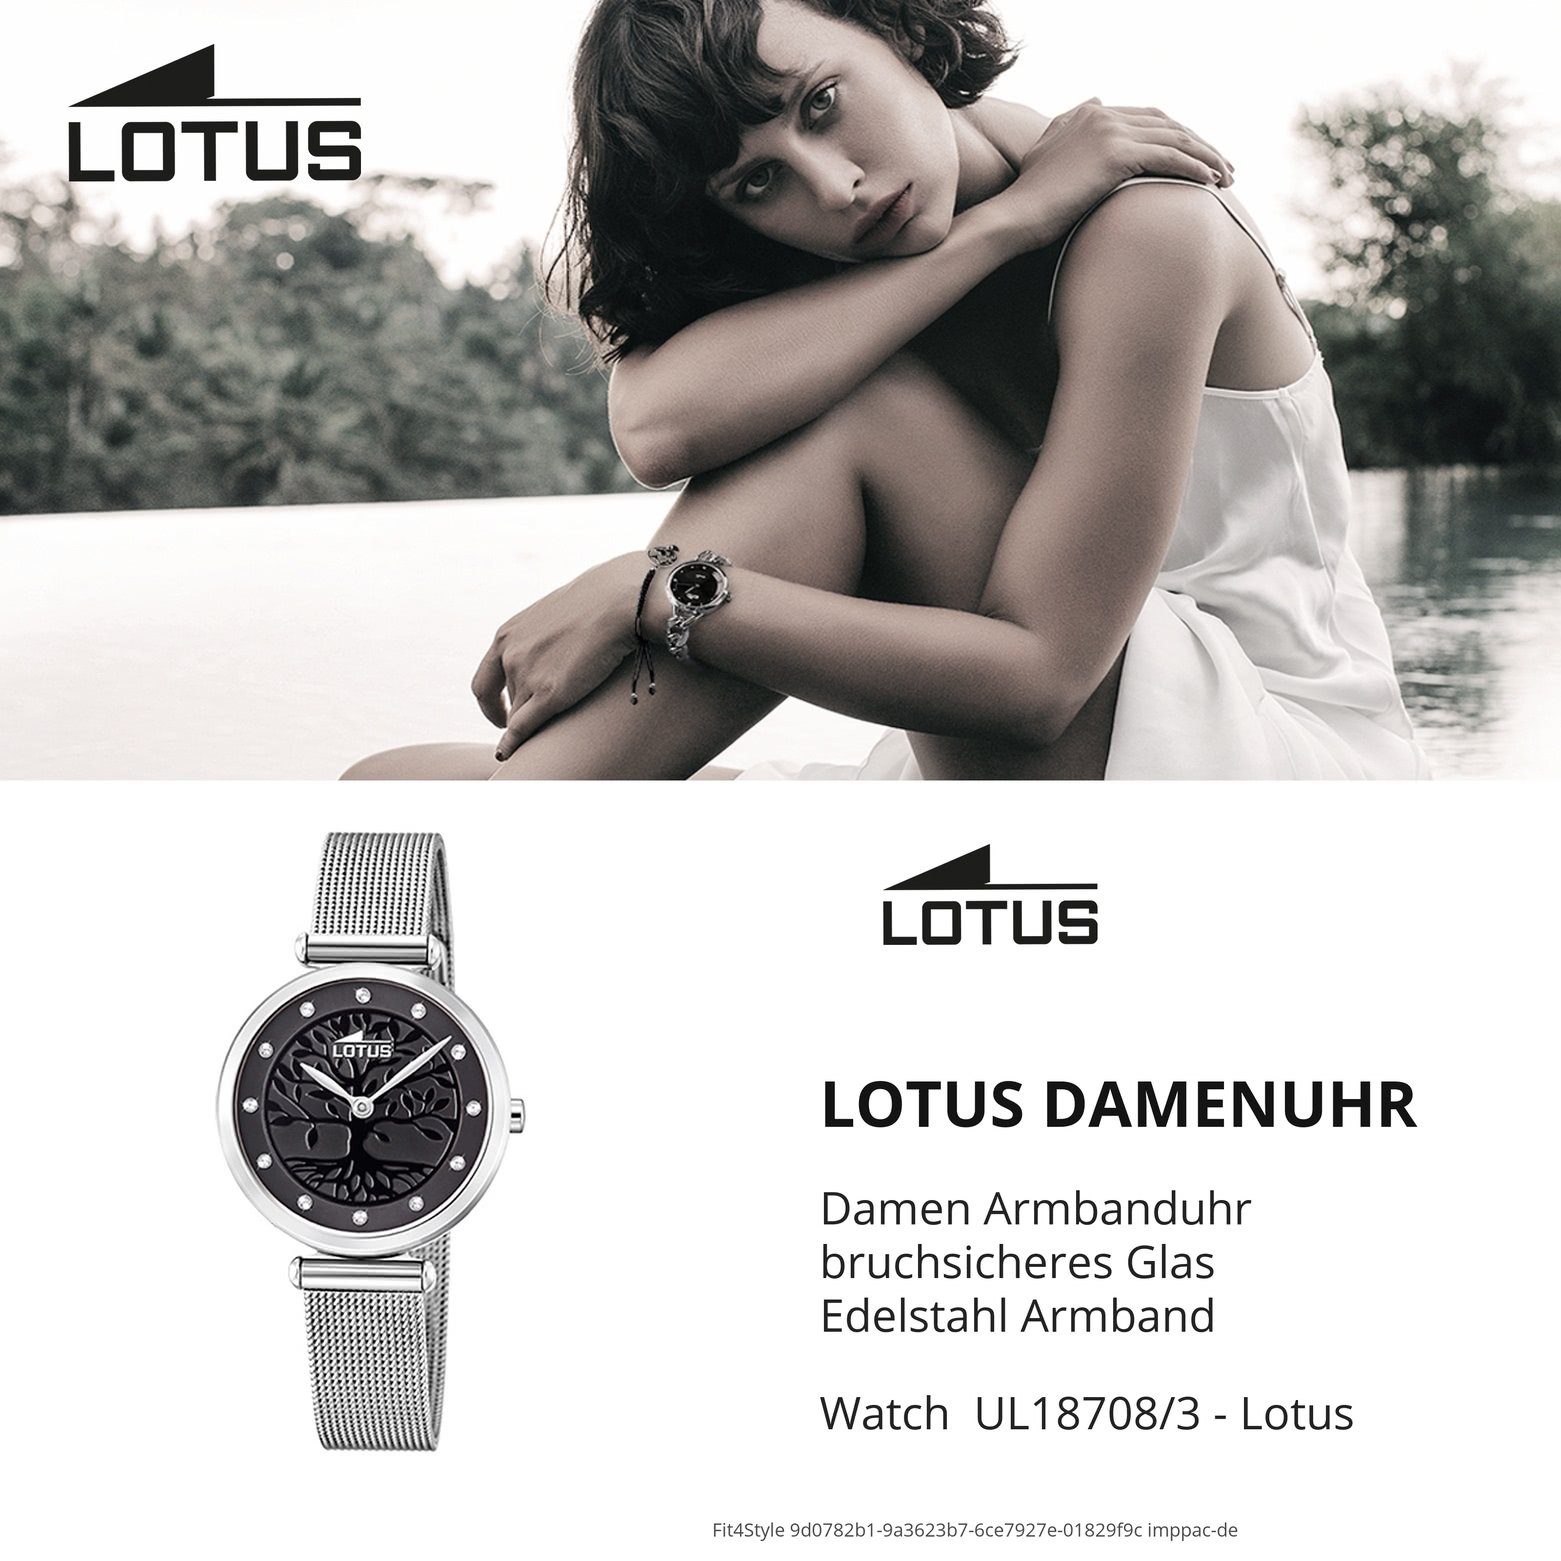 Lotus Quarzuhr LOTUS Damen Uhr klein (ca. 29mm) silber Edelstahlarmband 18708/3, Fashion rund, Damenuhr